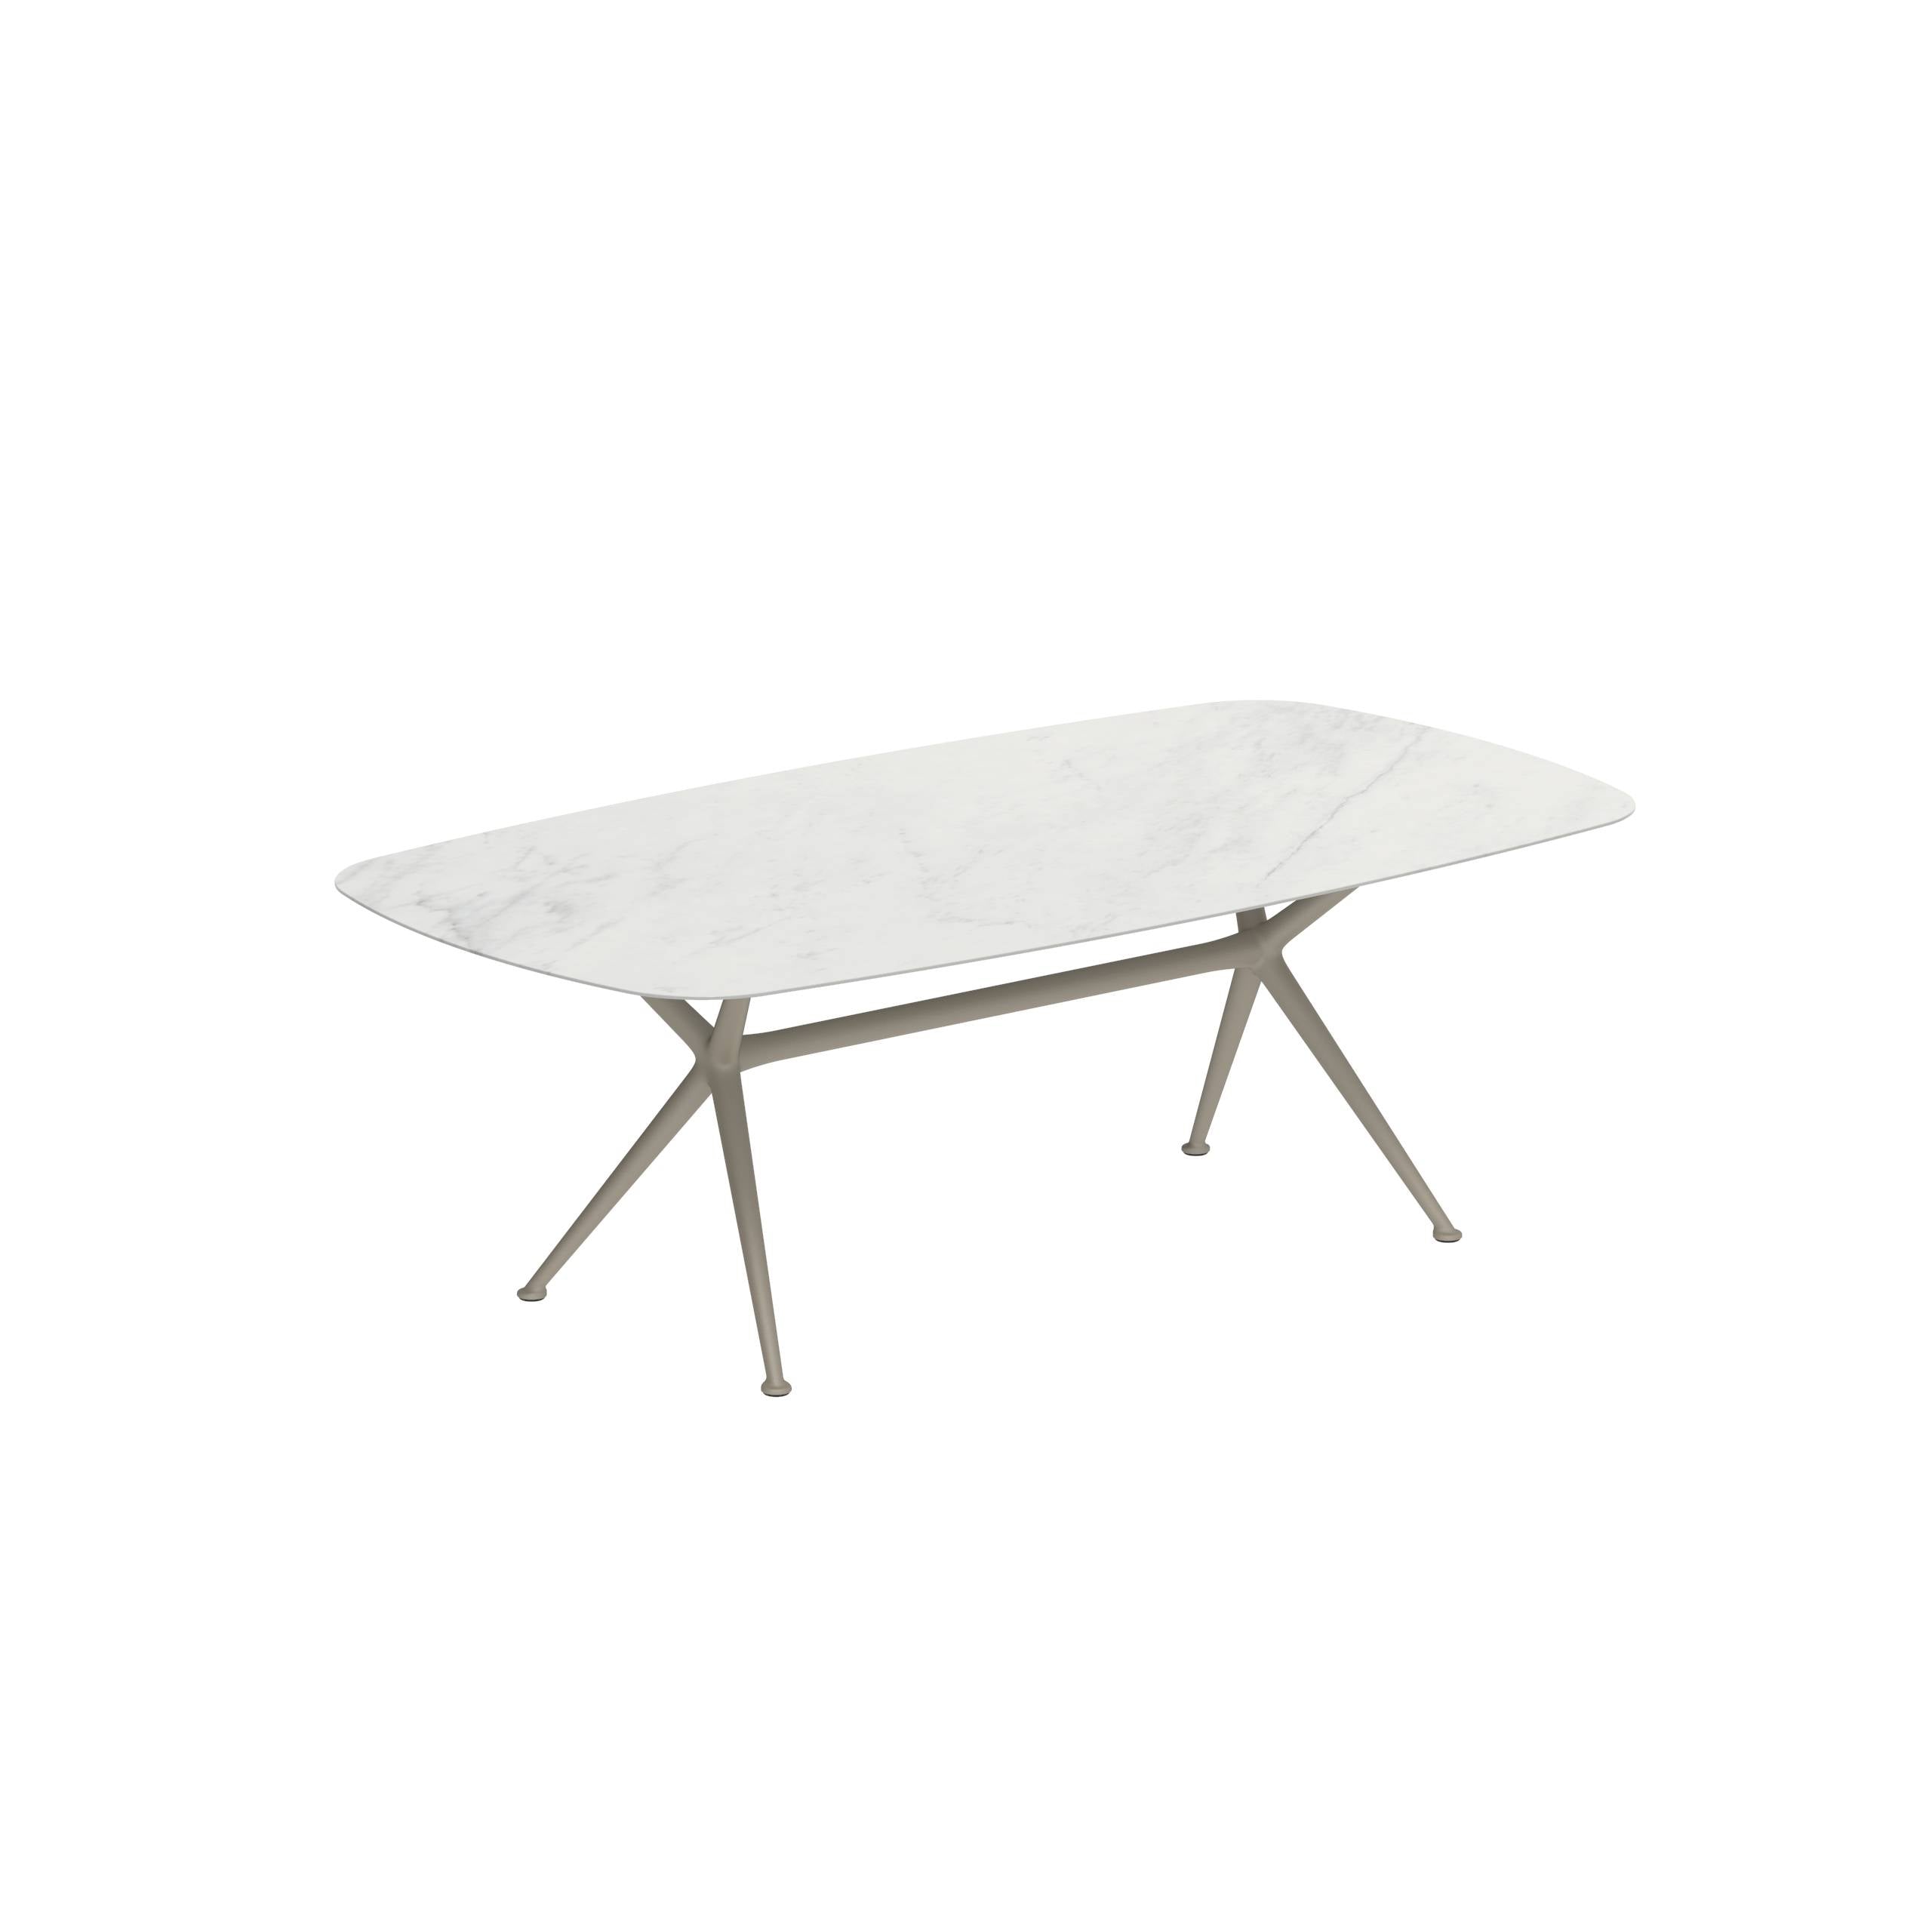 Exes Table 220x120cm Alu Legs Sand - Table Top Ceramic Bianco Statuario